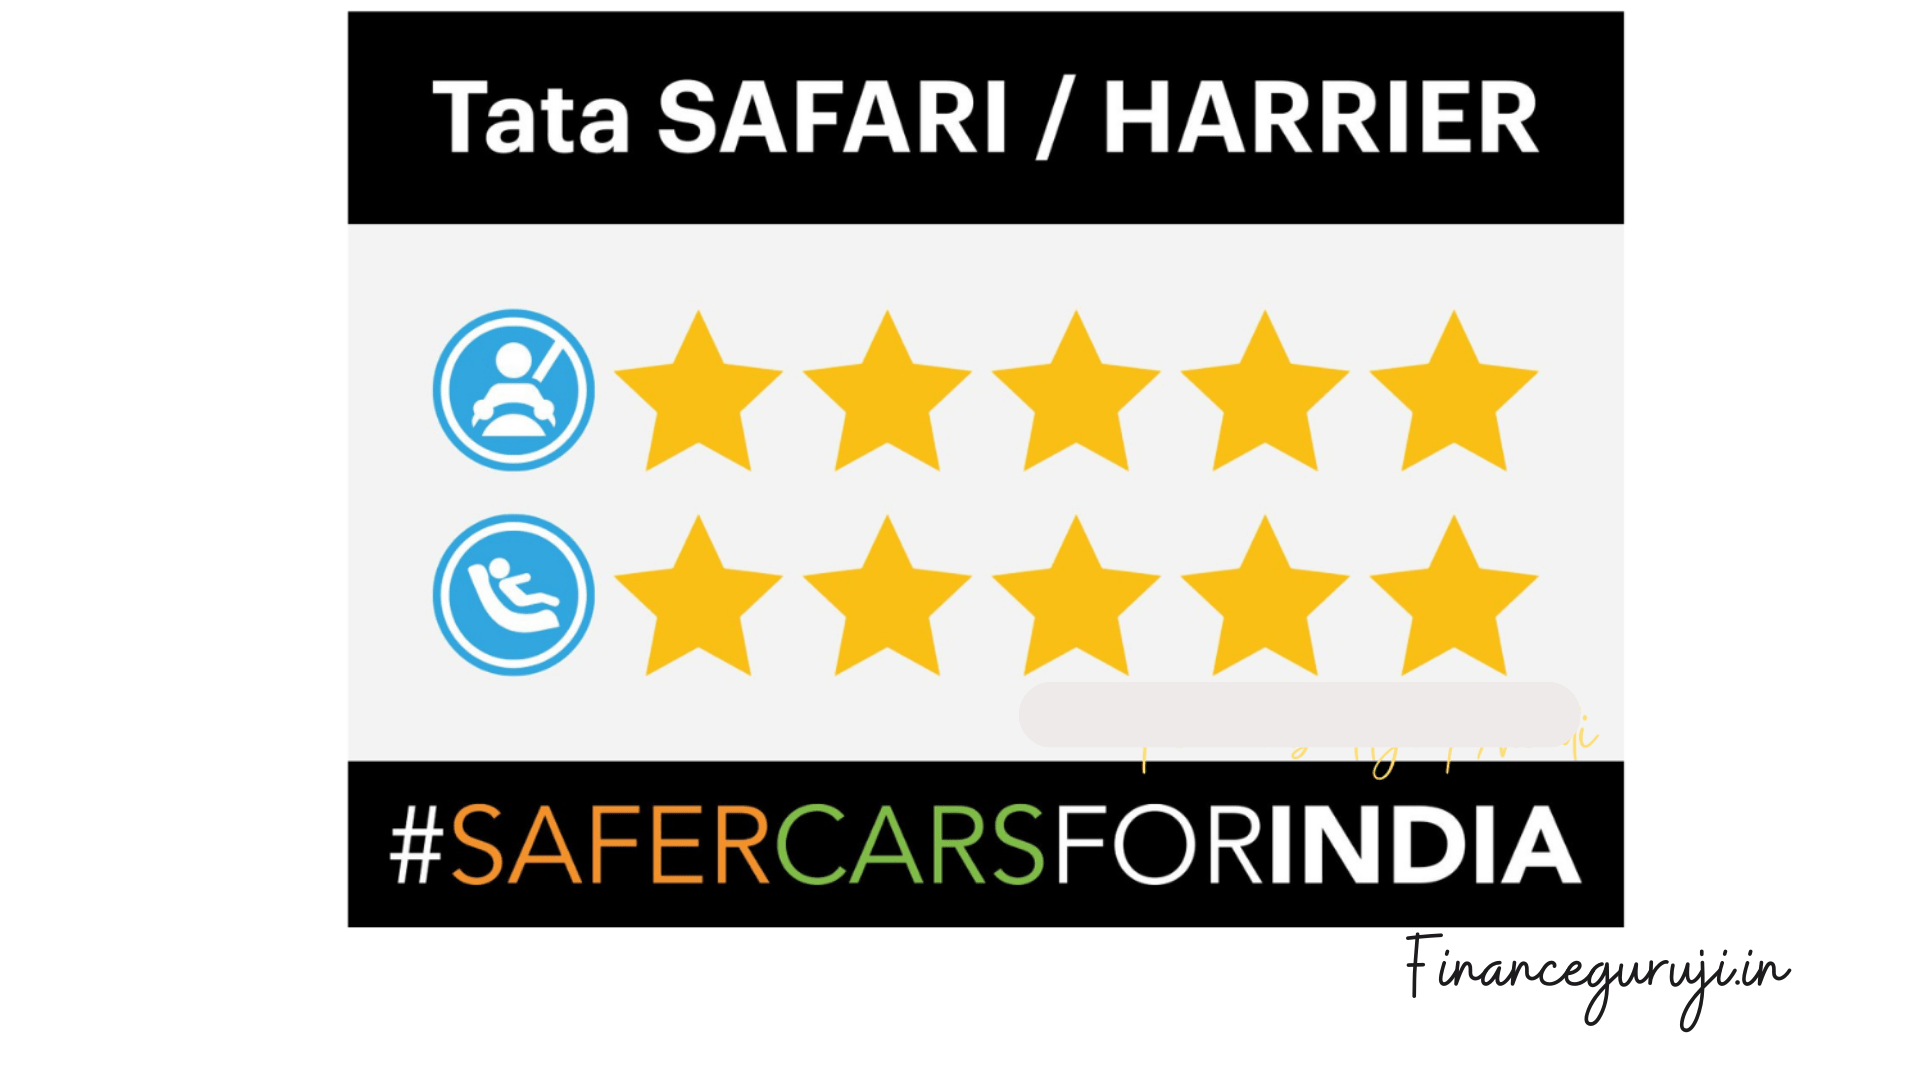 Tata Safari and Harrier ratings